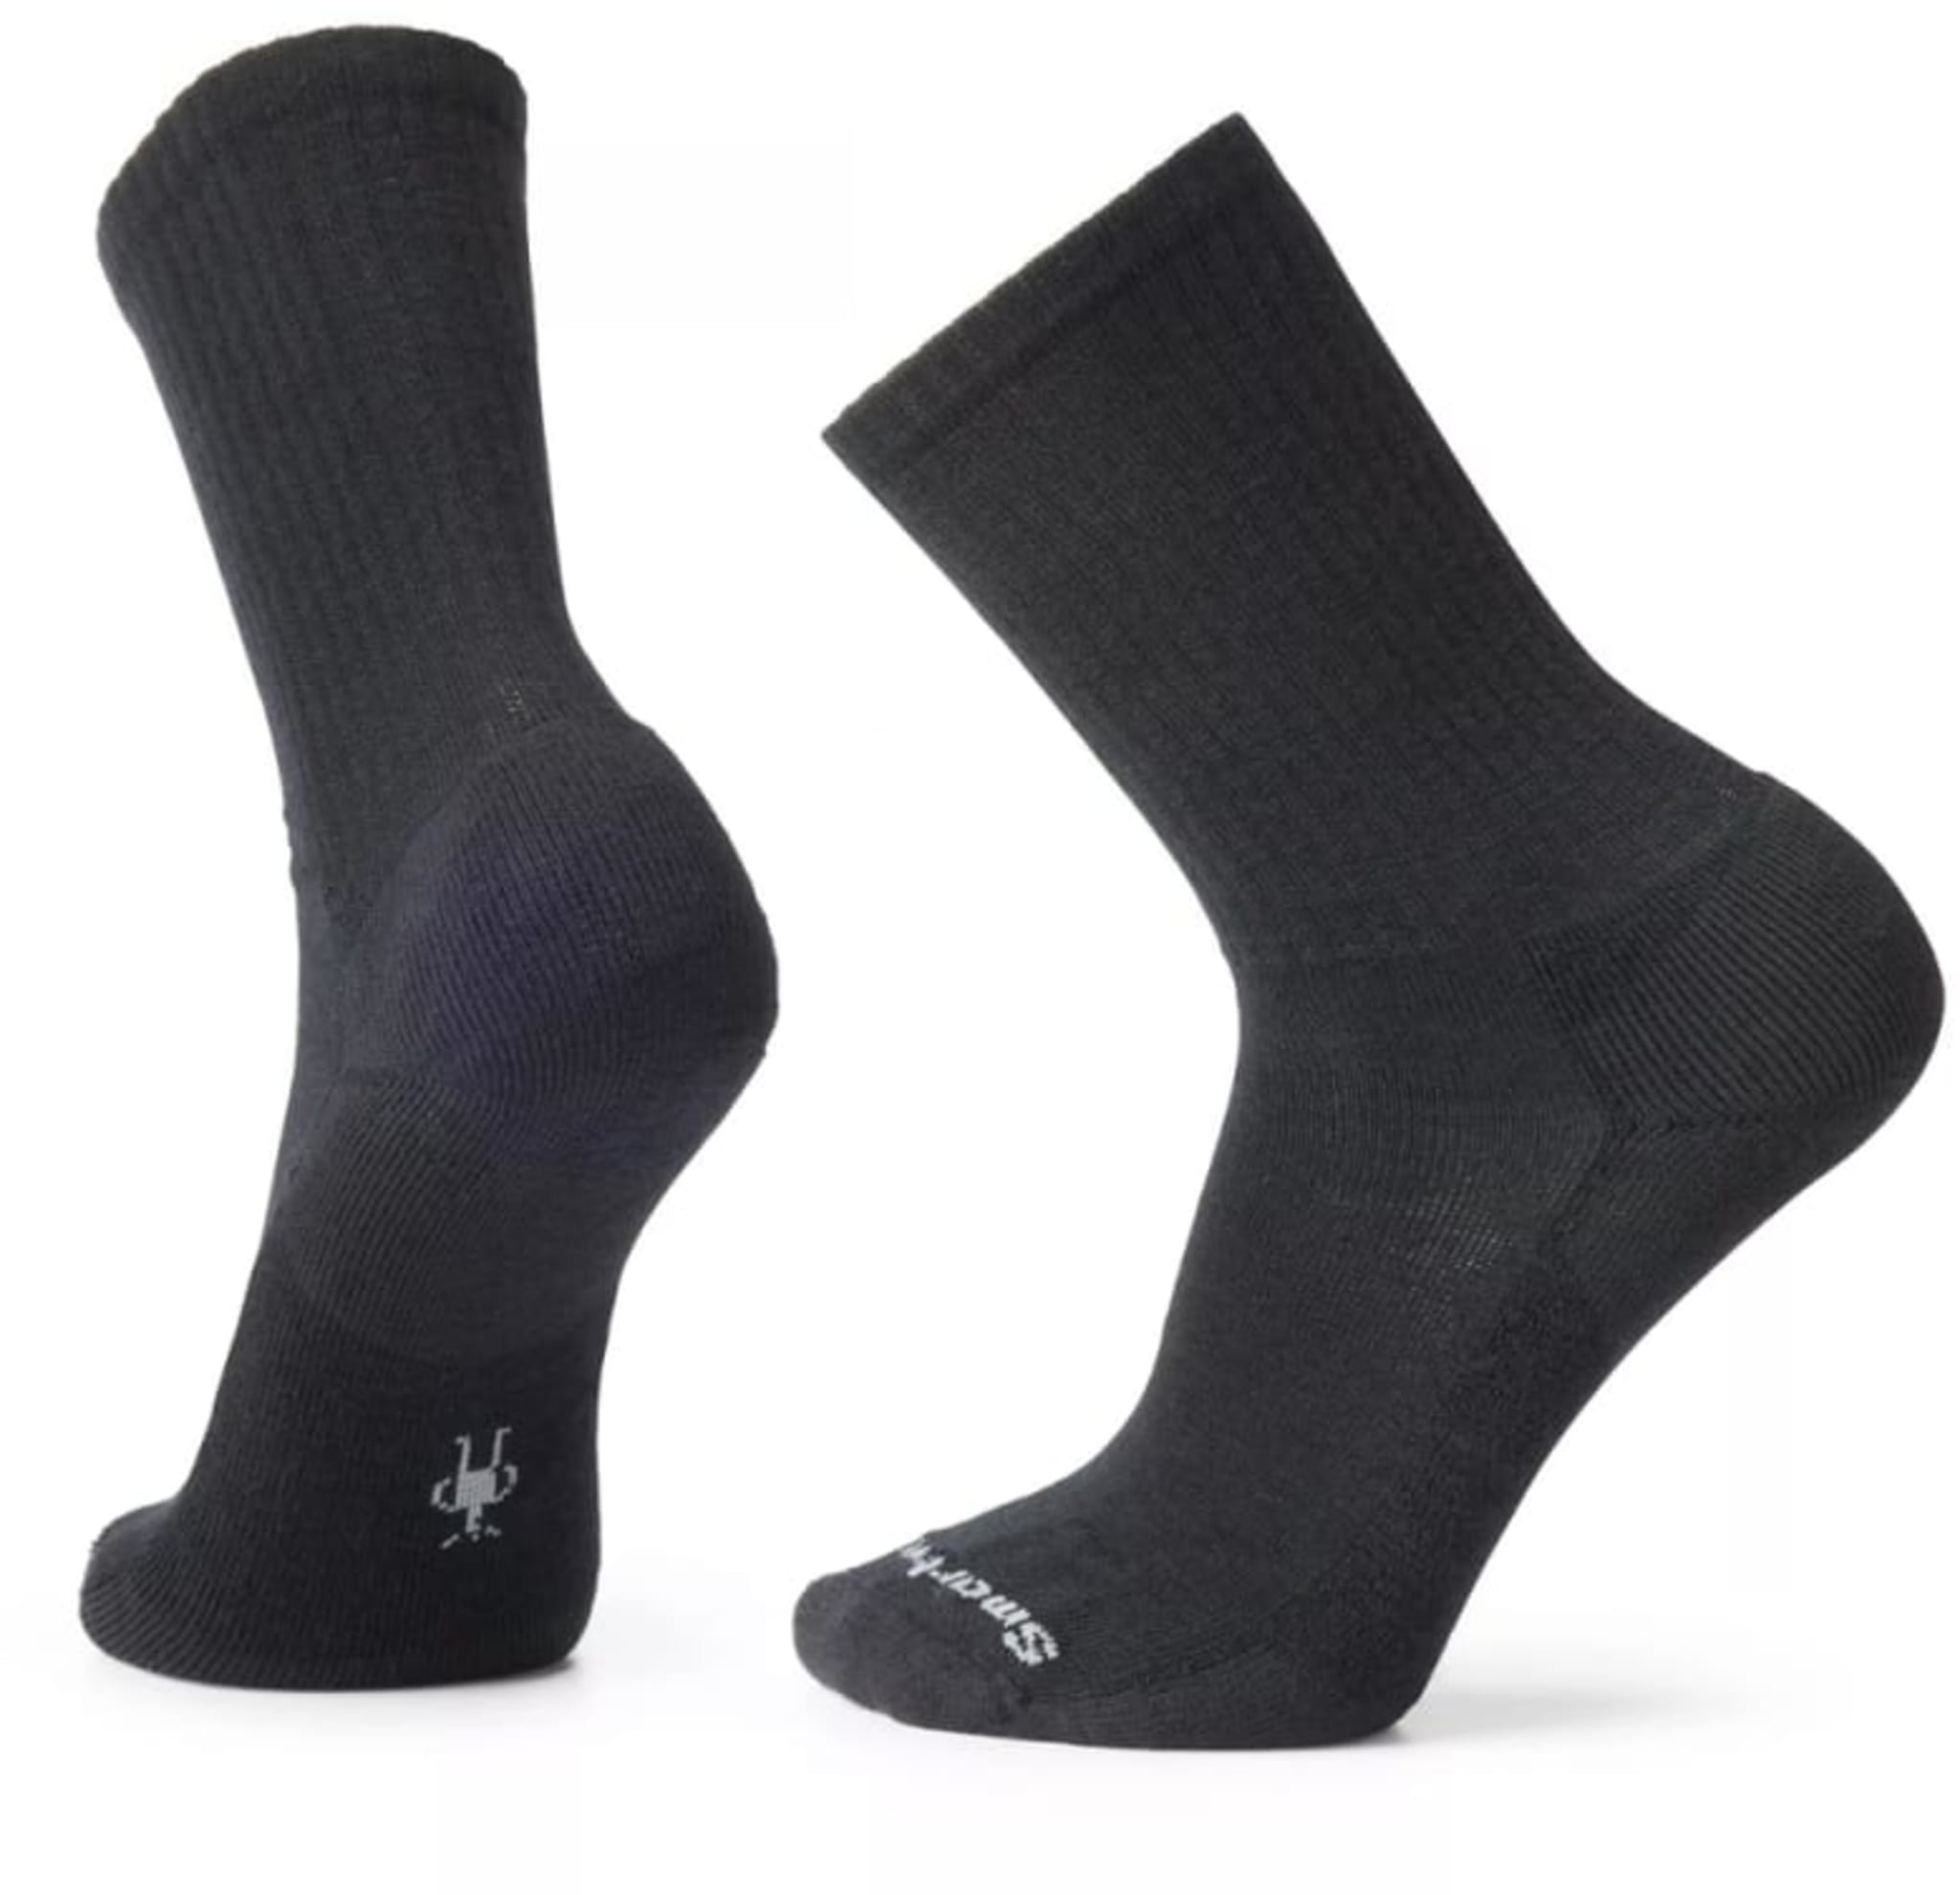 Varme og slitesterke sokker i ullblanding. 